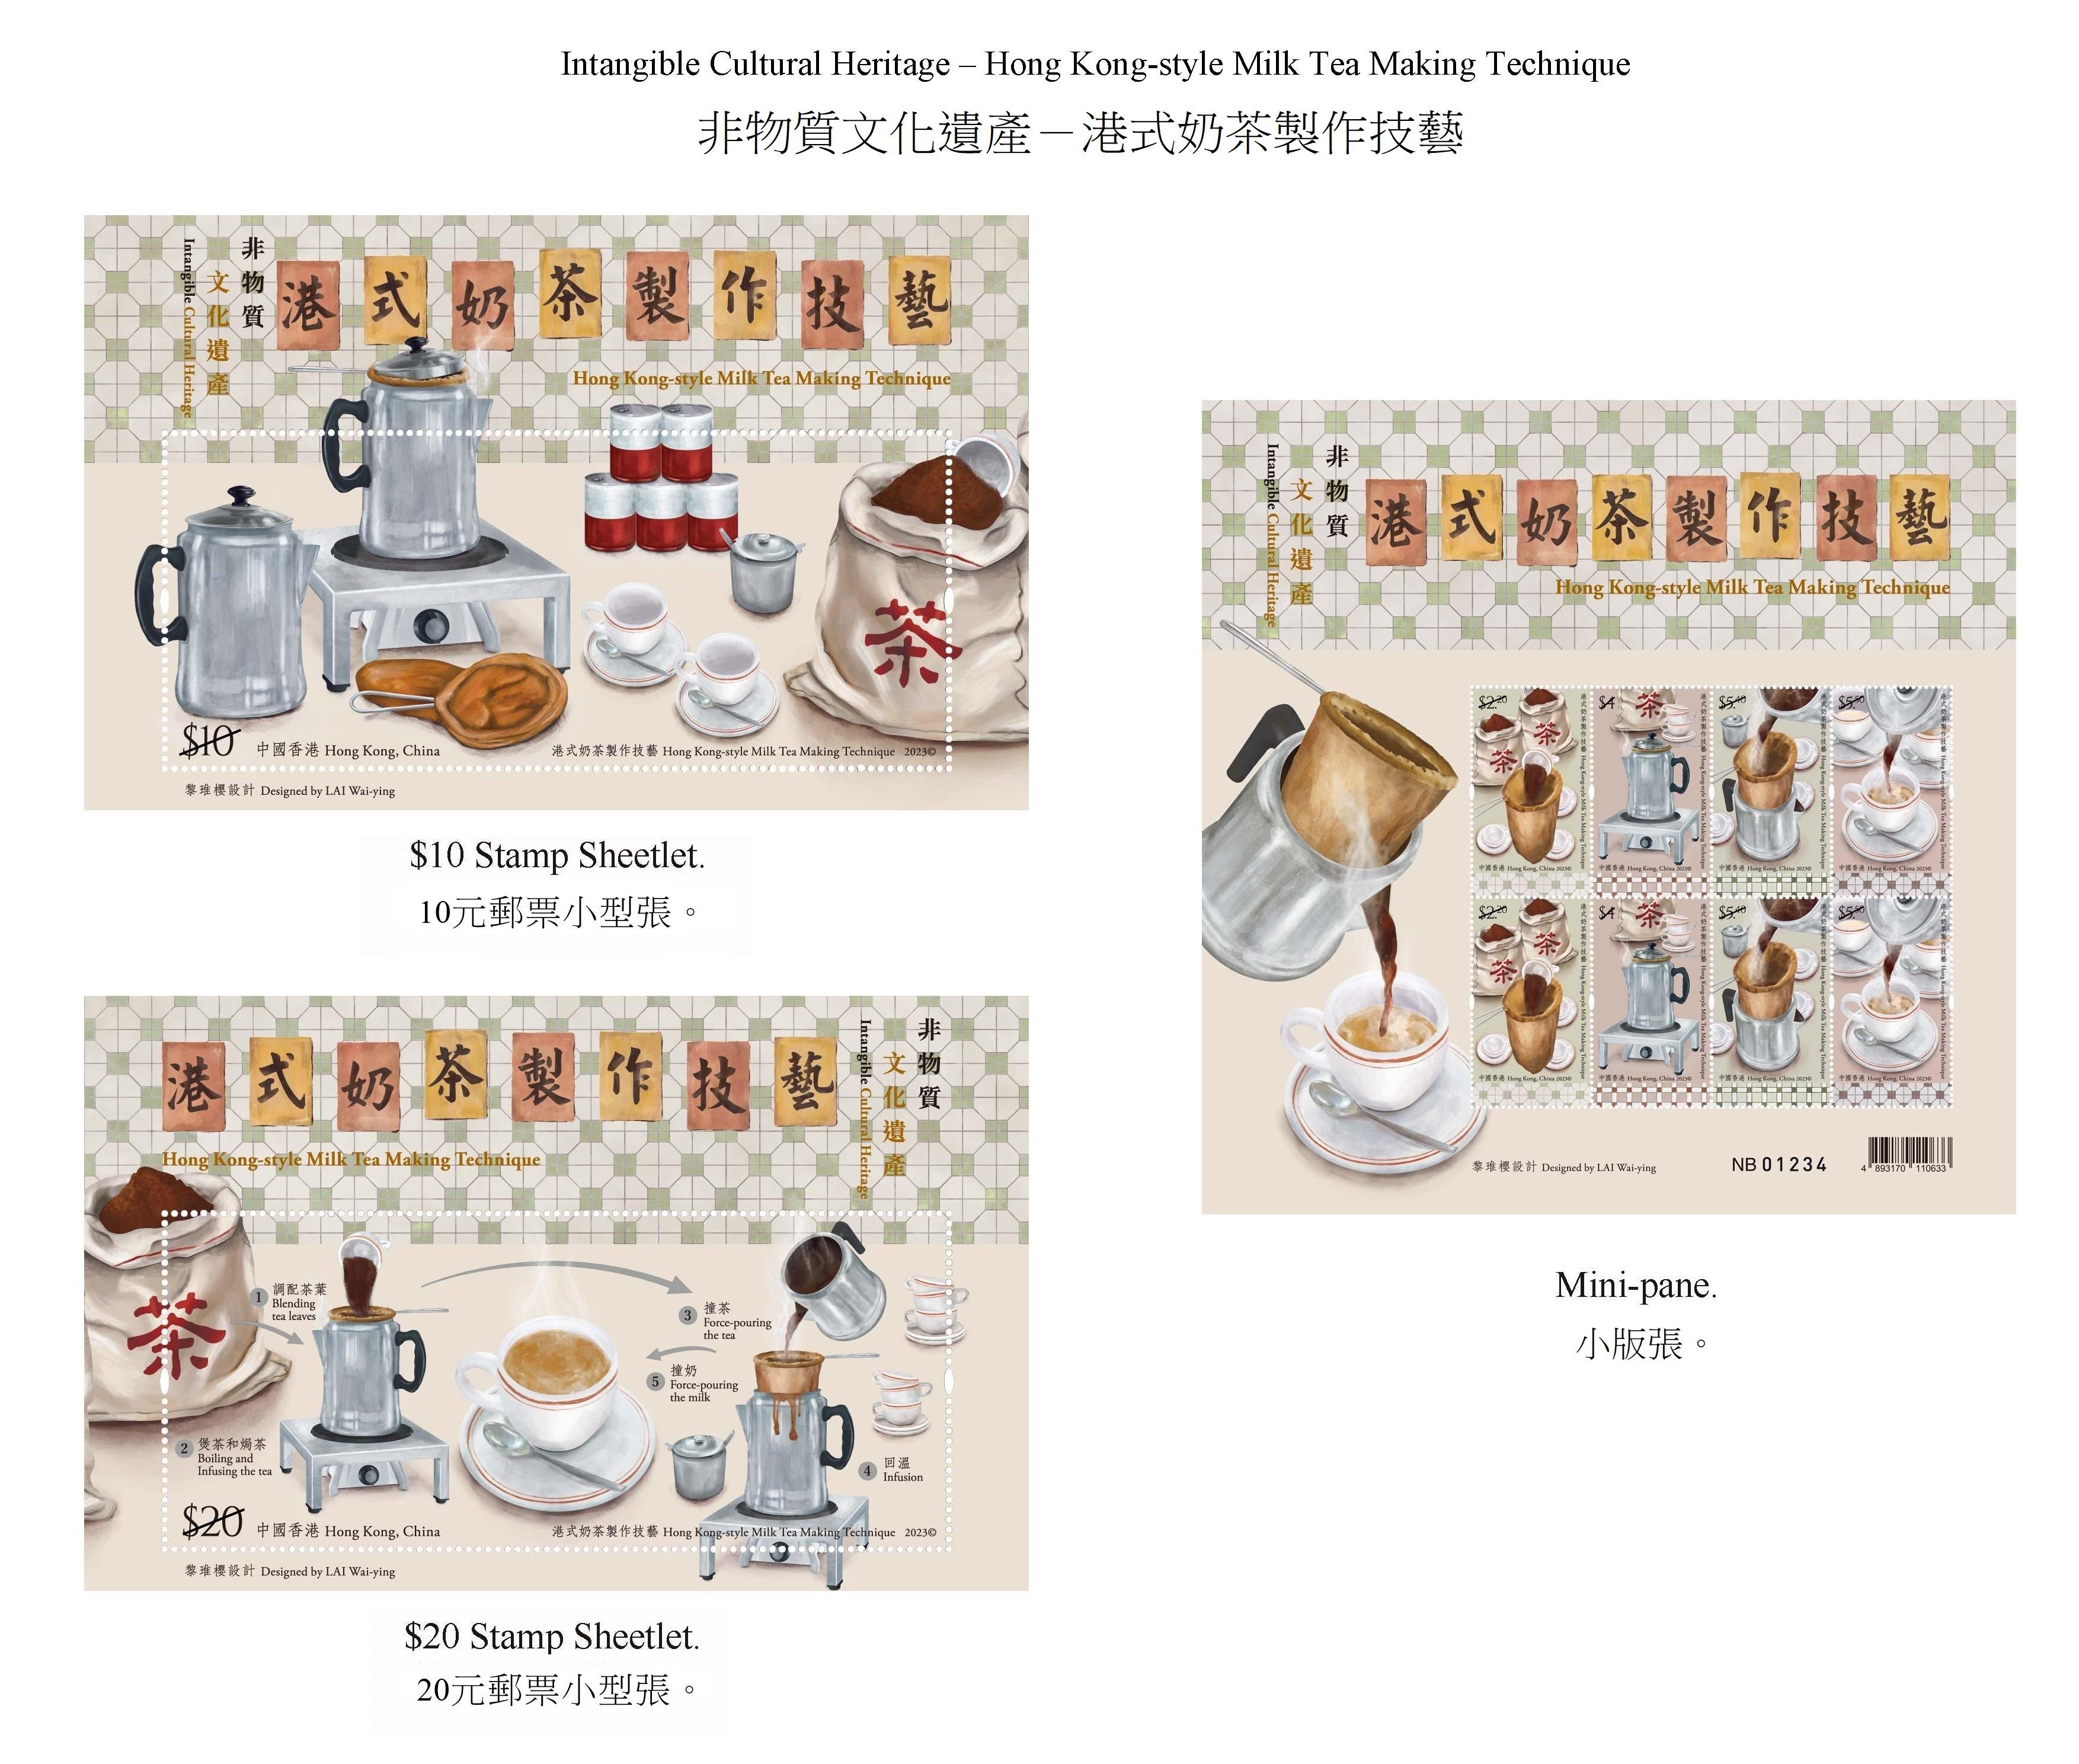 香港邮政七月二十五日（星期二）发行以「非物质文化遗产——港式奶茶制作技艺」为题的特别邮票及相关集邮品。图示邮票小型张及小版张。